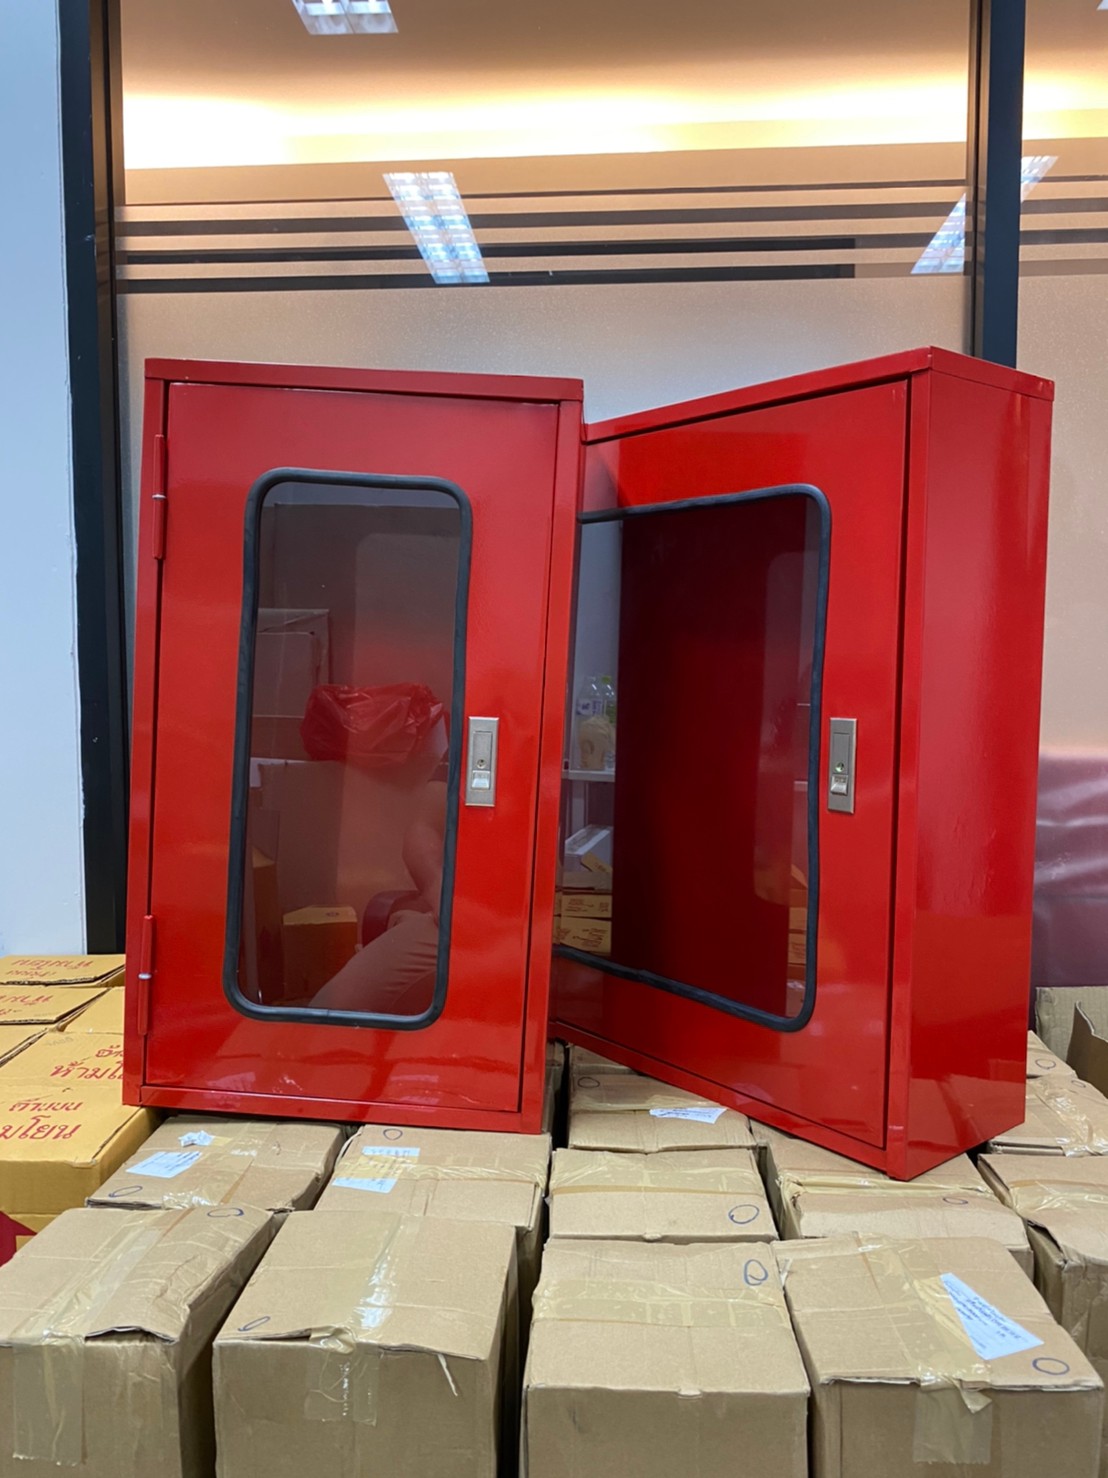 ตู้เก็บถังดับเพลิง (ถังเดี่ยว)(ถังคู่)สีแดง ใช้เก็บถังดับเพลิงขนาด 10 หรือ 15 ปอนด์